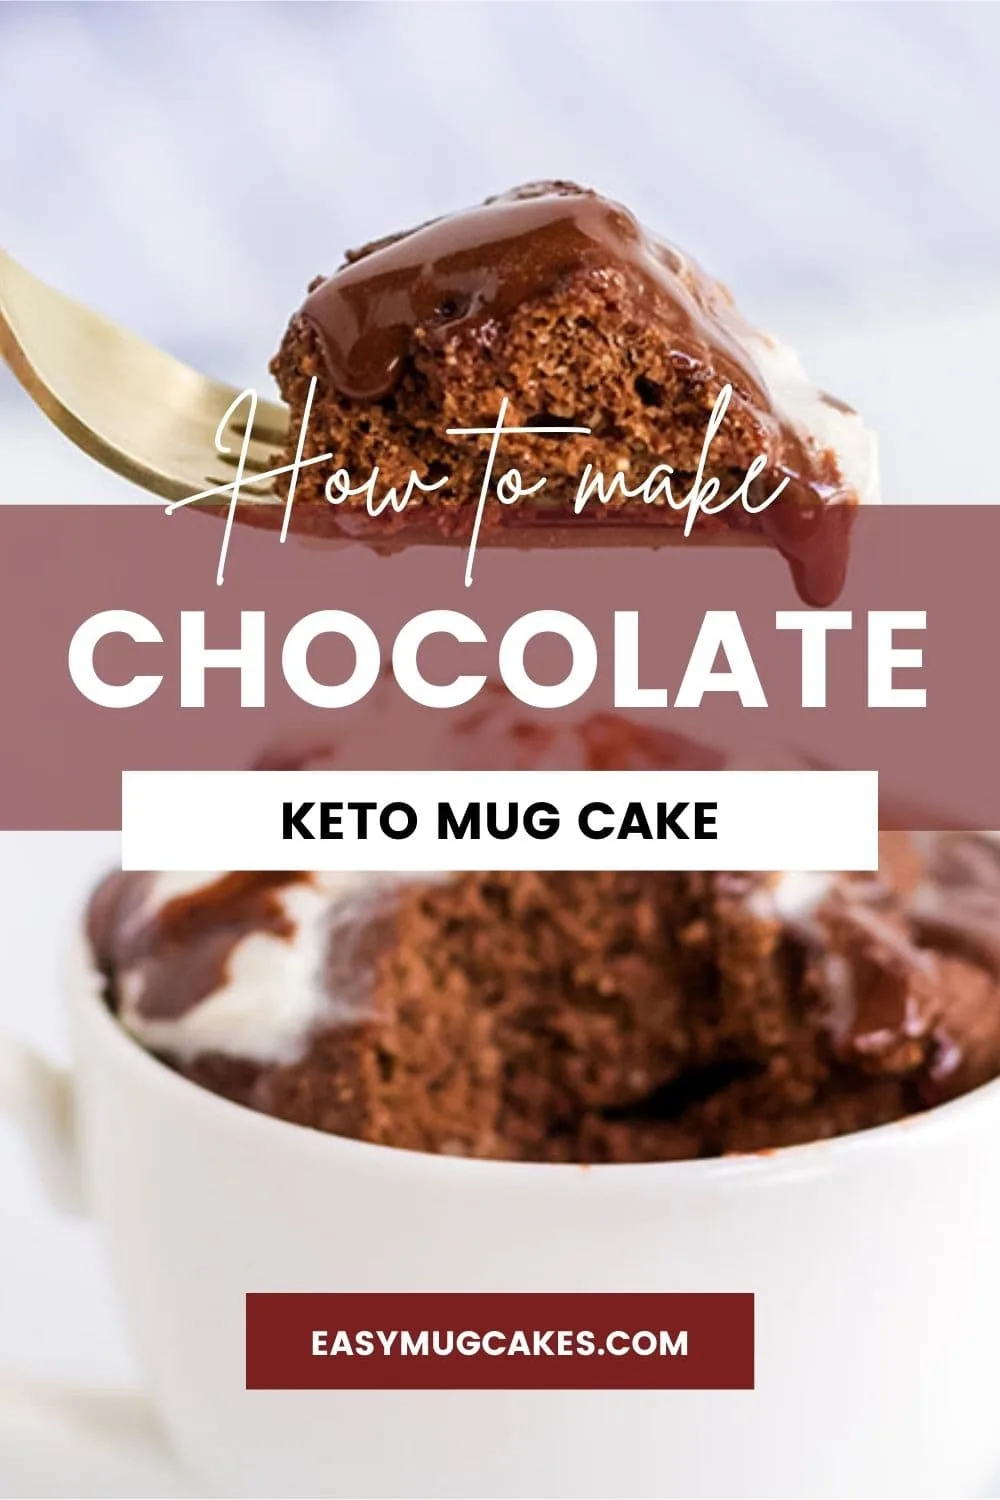 Keto Chocolate Mug Cake with Glaze Recipe - easymugcakes.com